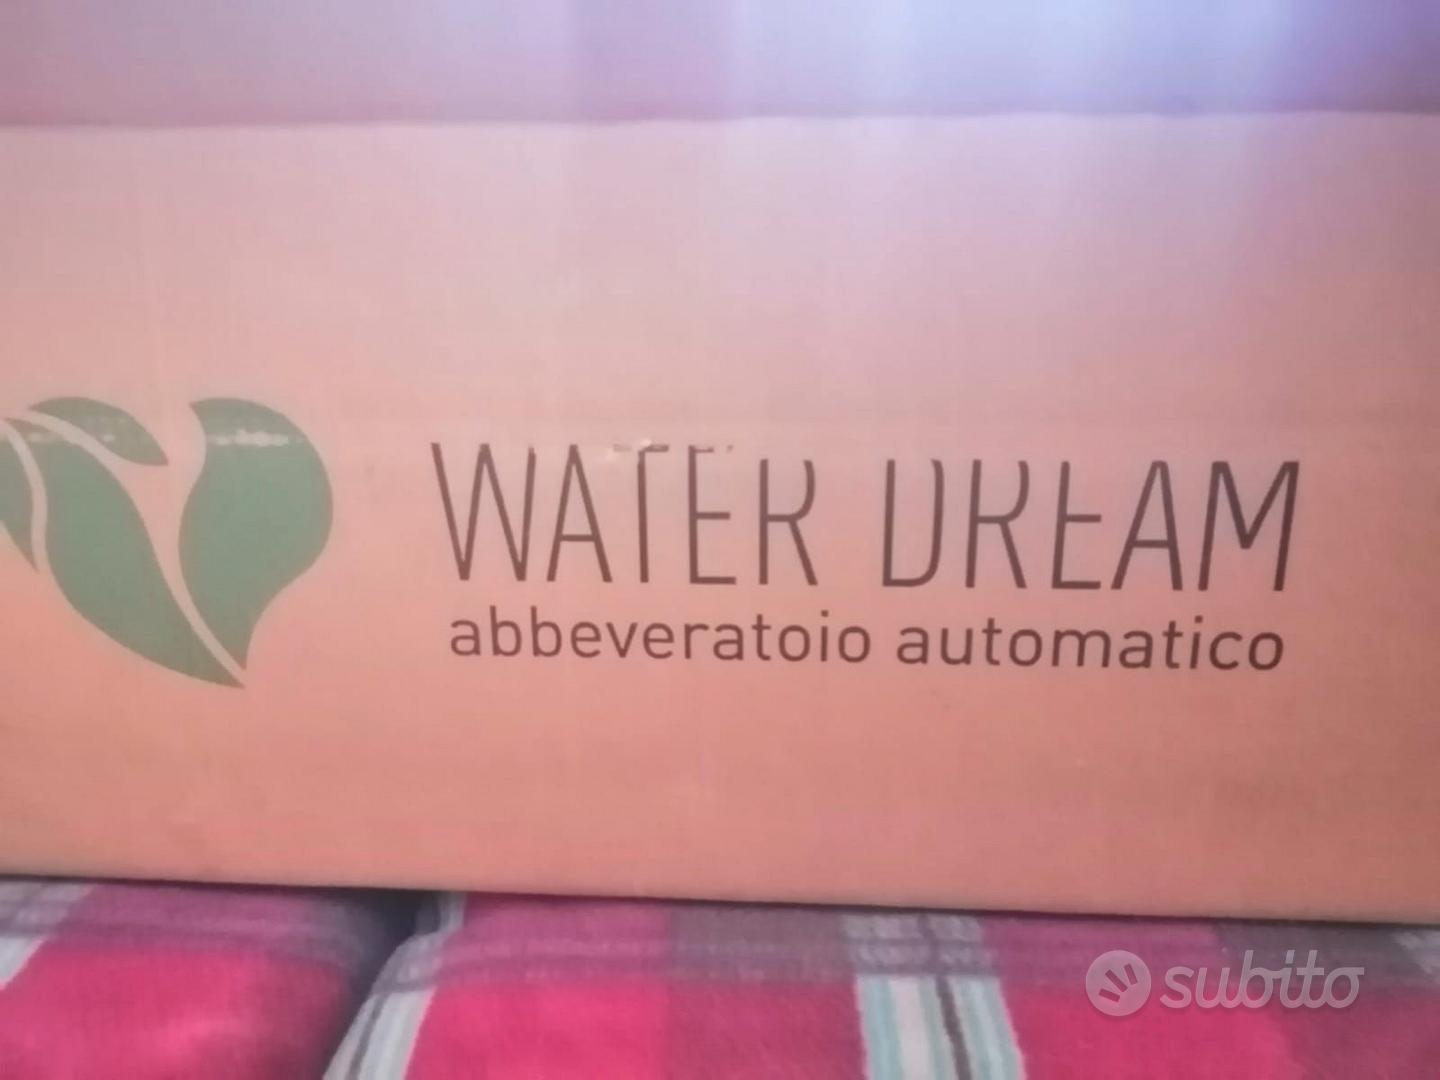 Abbeveratoio Automatico Water Dream